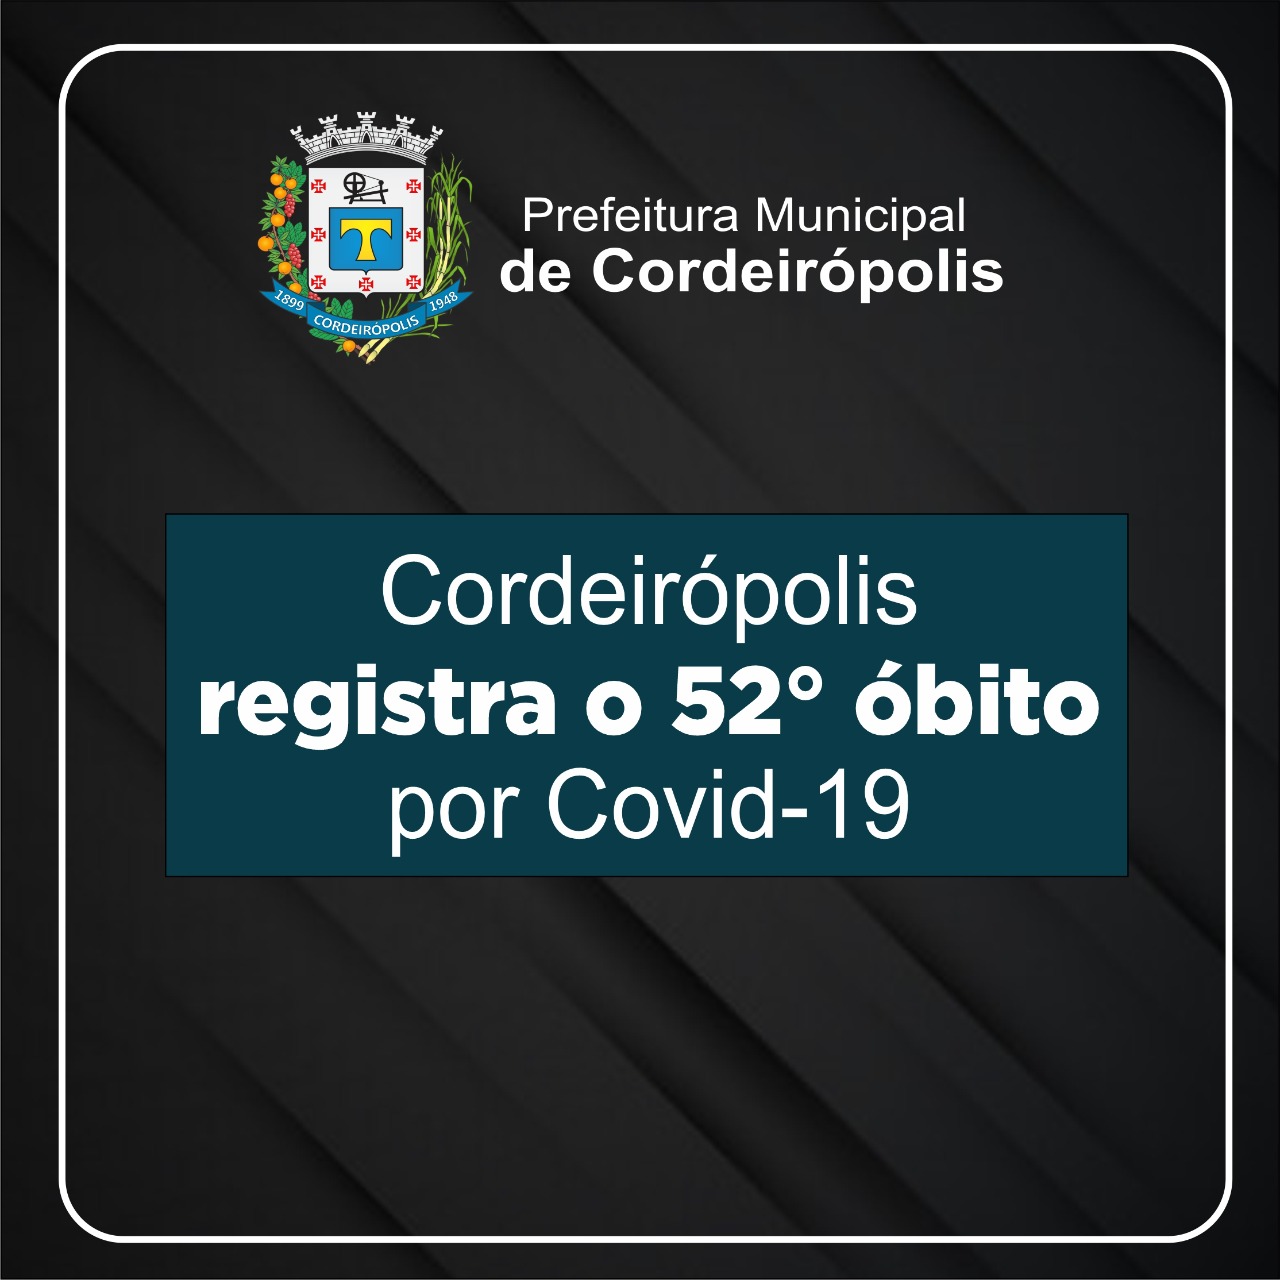 Cordeirópolis registra o 52° obito de Covid